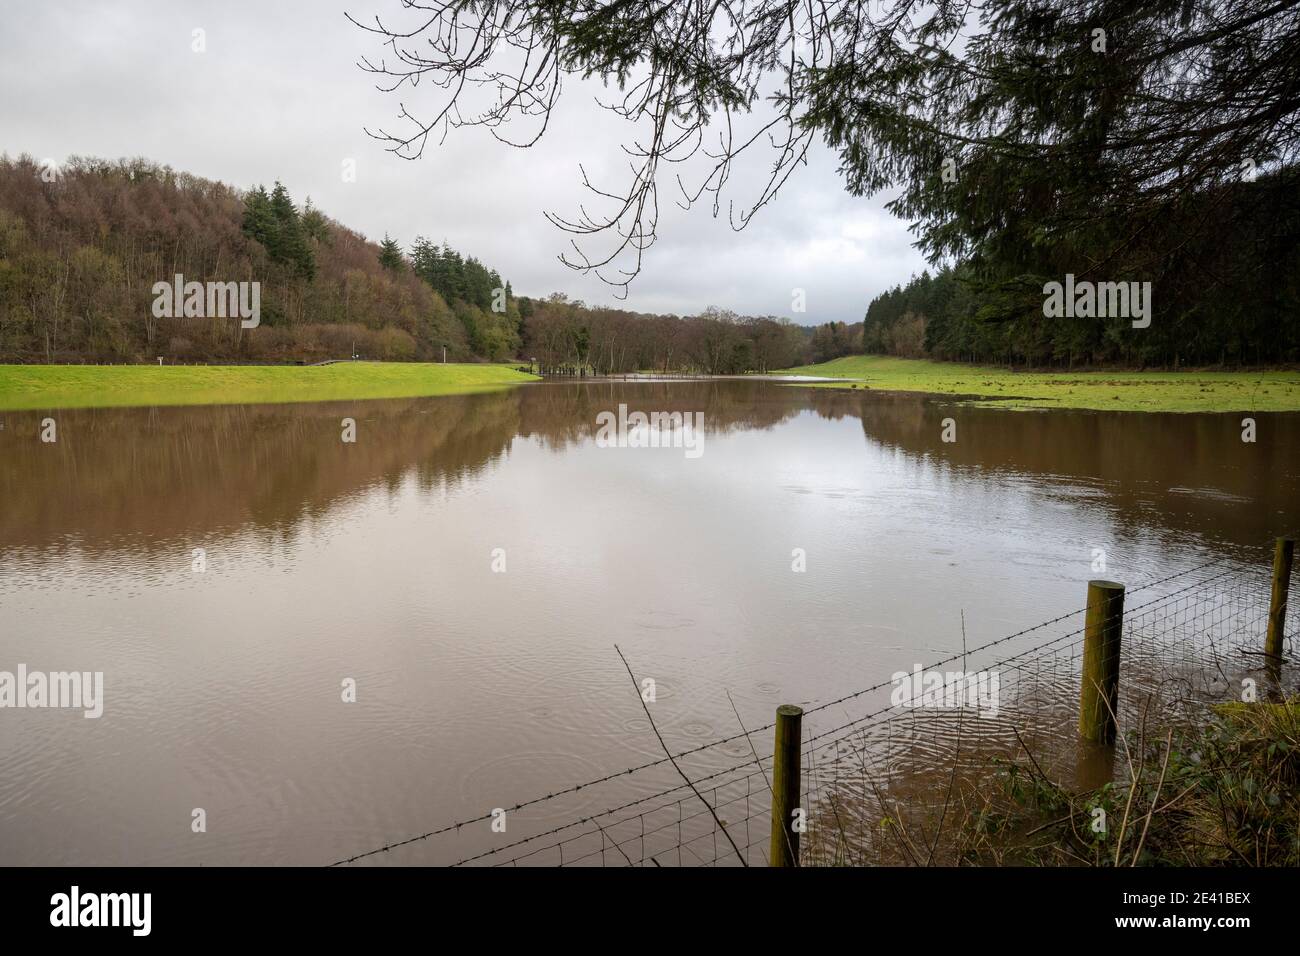 Pickering, Angleterre, Royaume-Uni, 22 janvier 2021. La ville échappe aux inondations pendant la tempête Christoph, malgré des niveaux d'eau record derrière le système de bondes. Banque D'Images